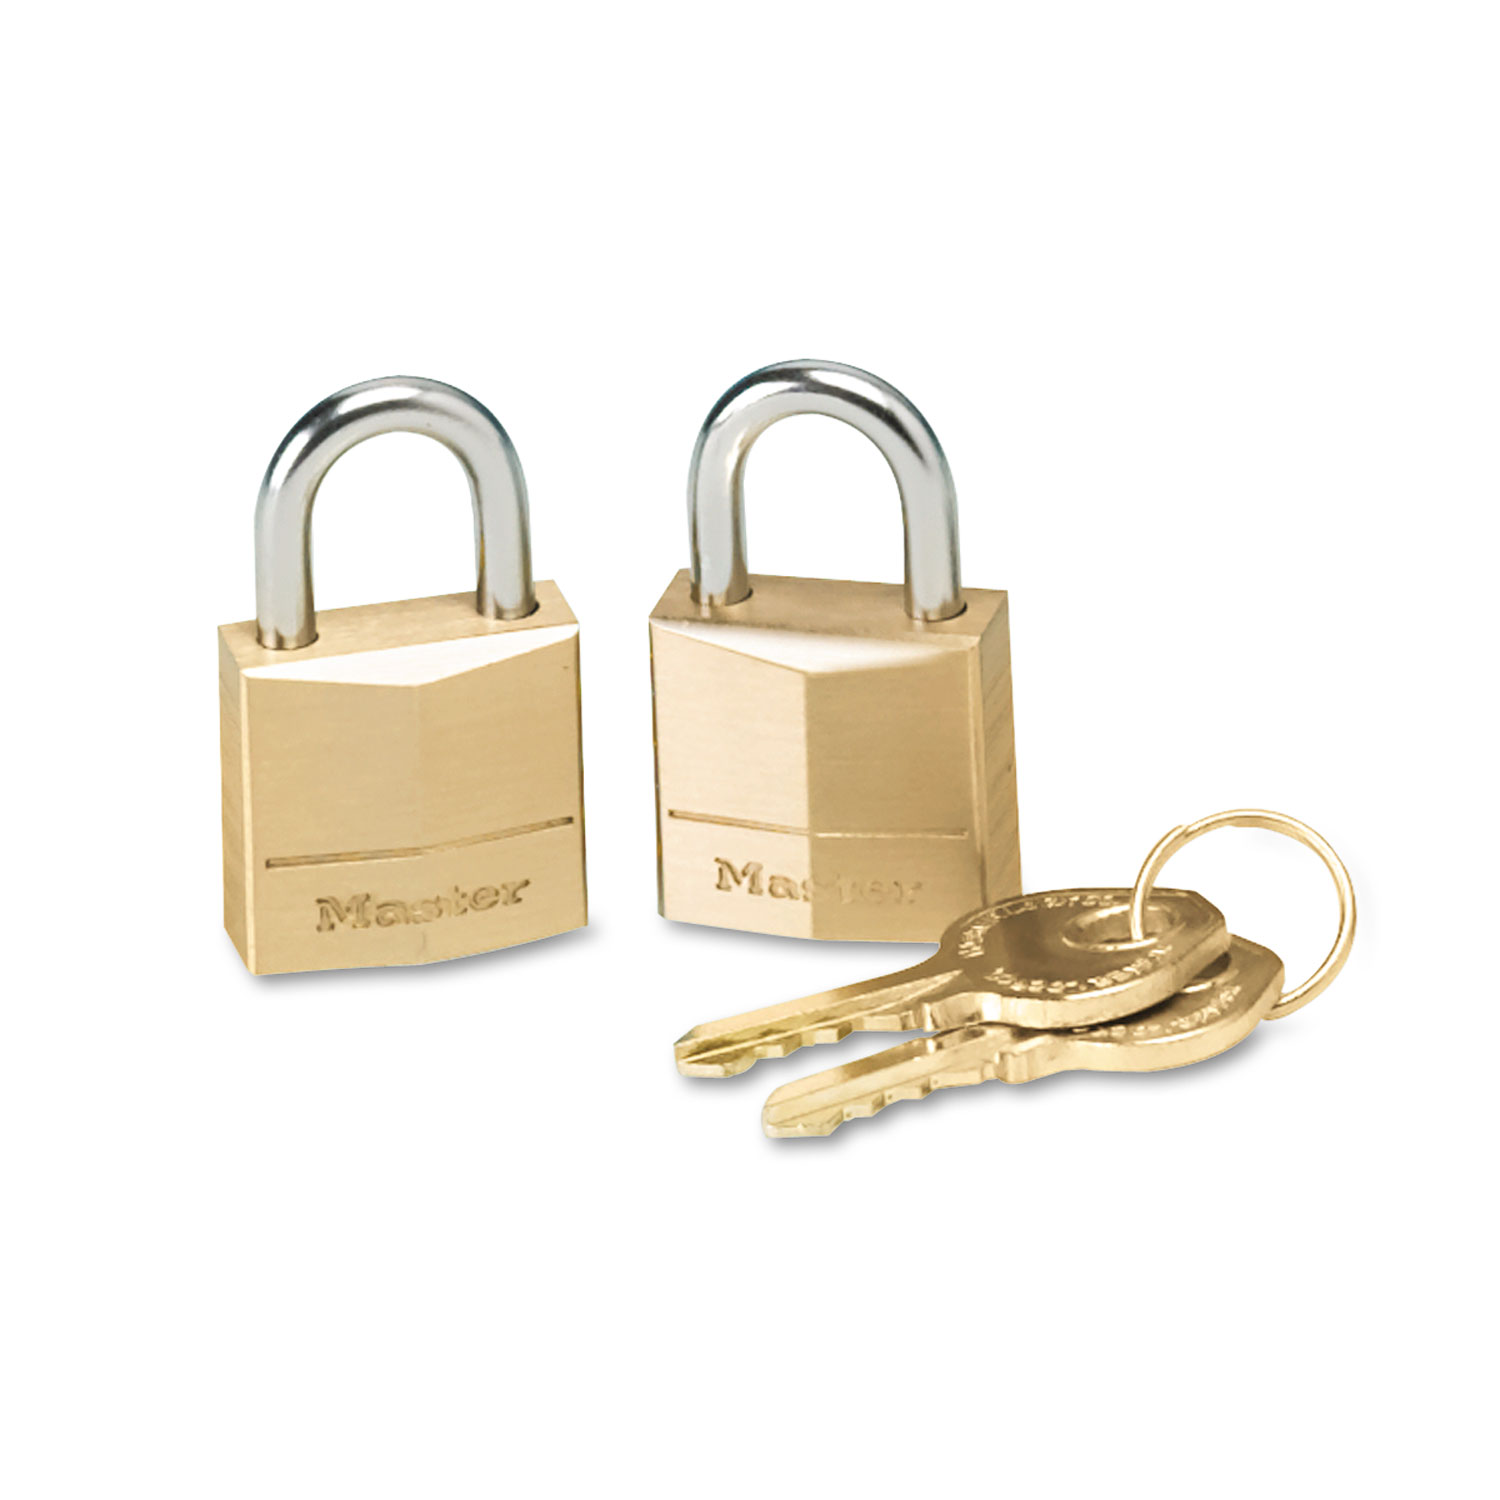 Three-Pin Brass Tumbler Locks, 3/4" Wide, 2 Locks & 2 Keys, 2/Pack